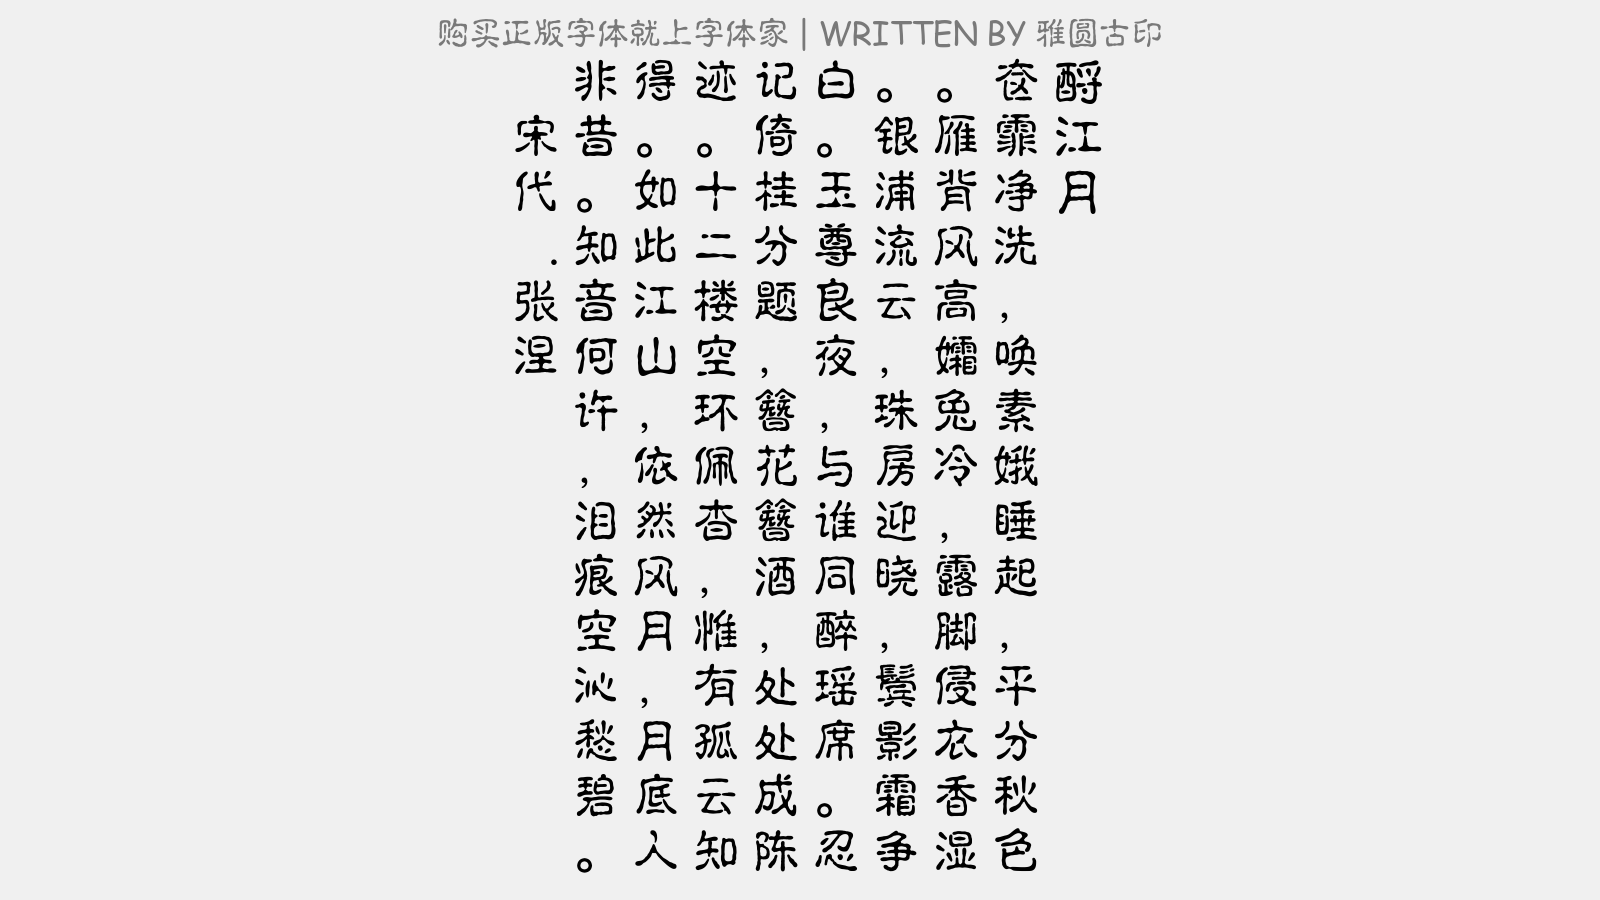 雅圆古印免费字体下载 中文字体免费下载尽在字体家